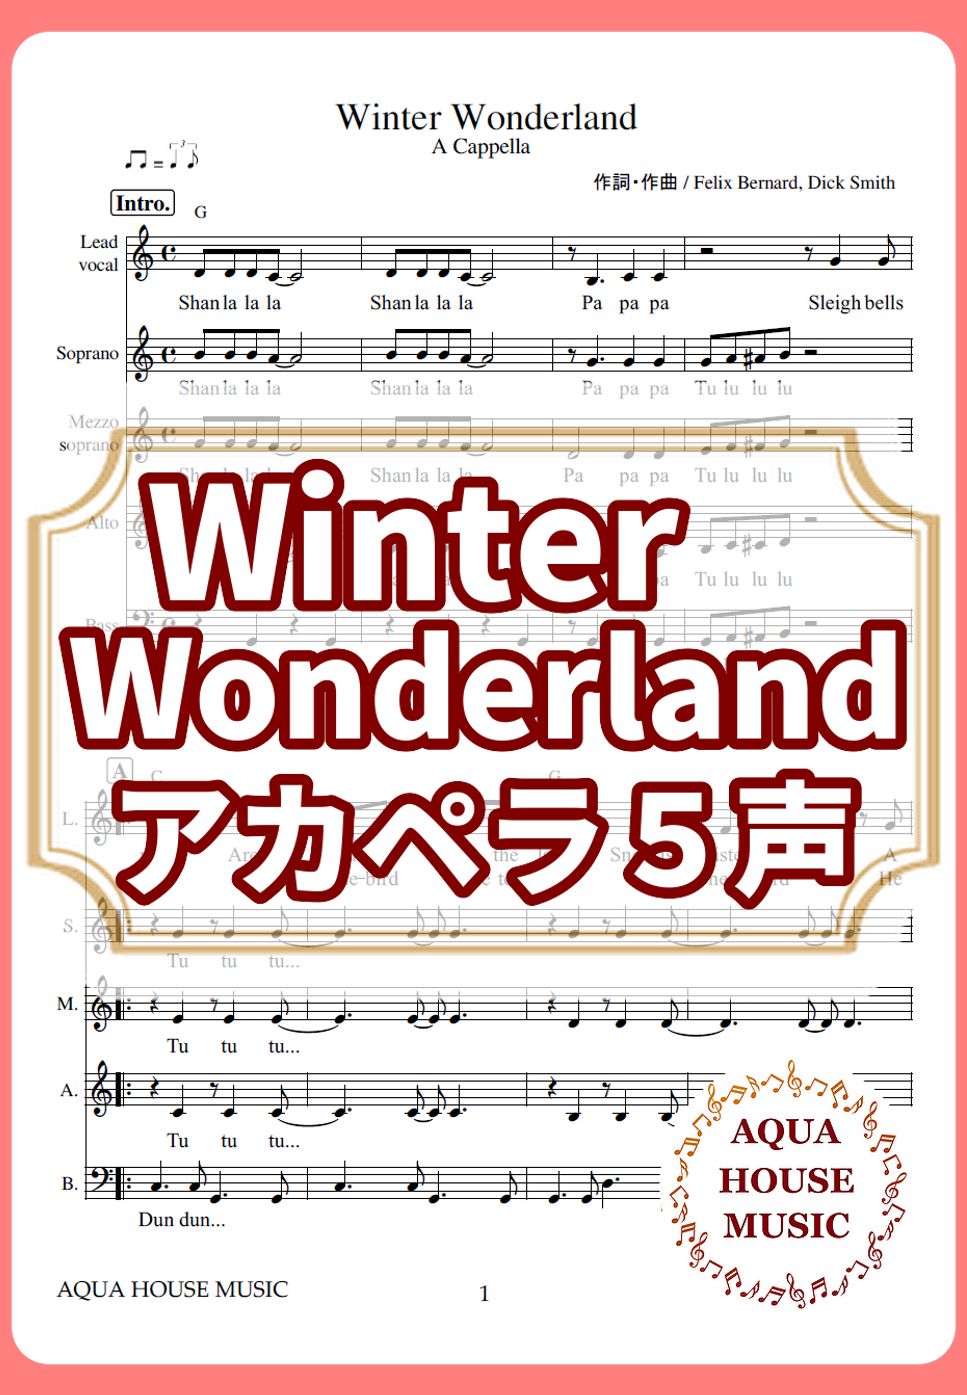 Winter Wonderland (アカペラ楽譜♪５声ボイパなし) by 飯田 亜紗子